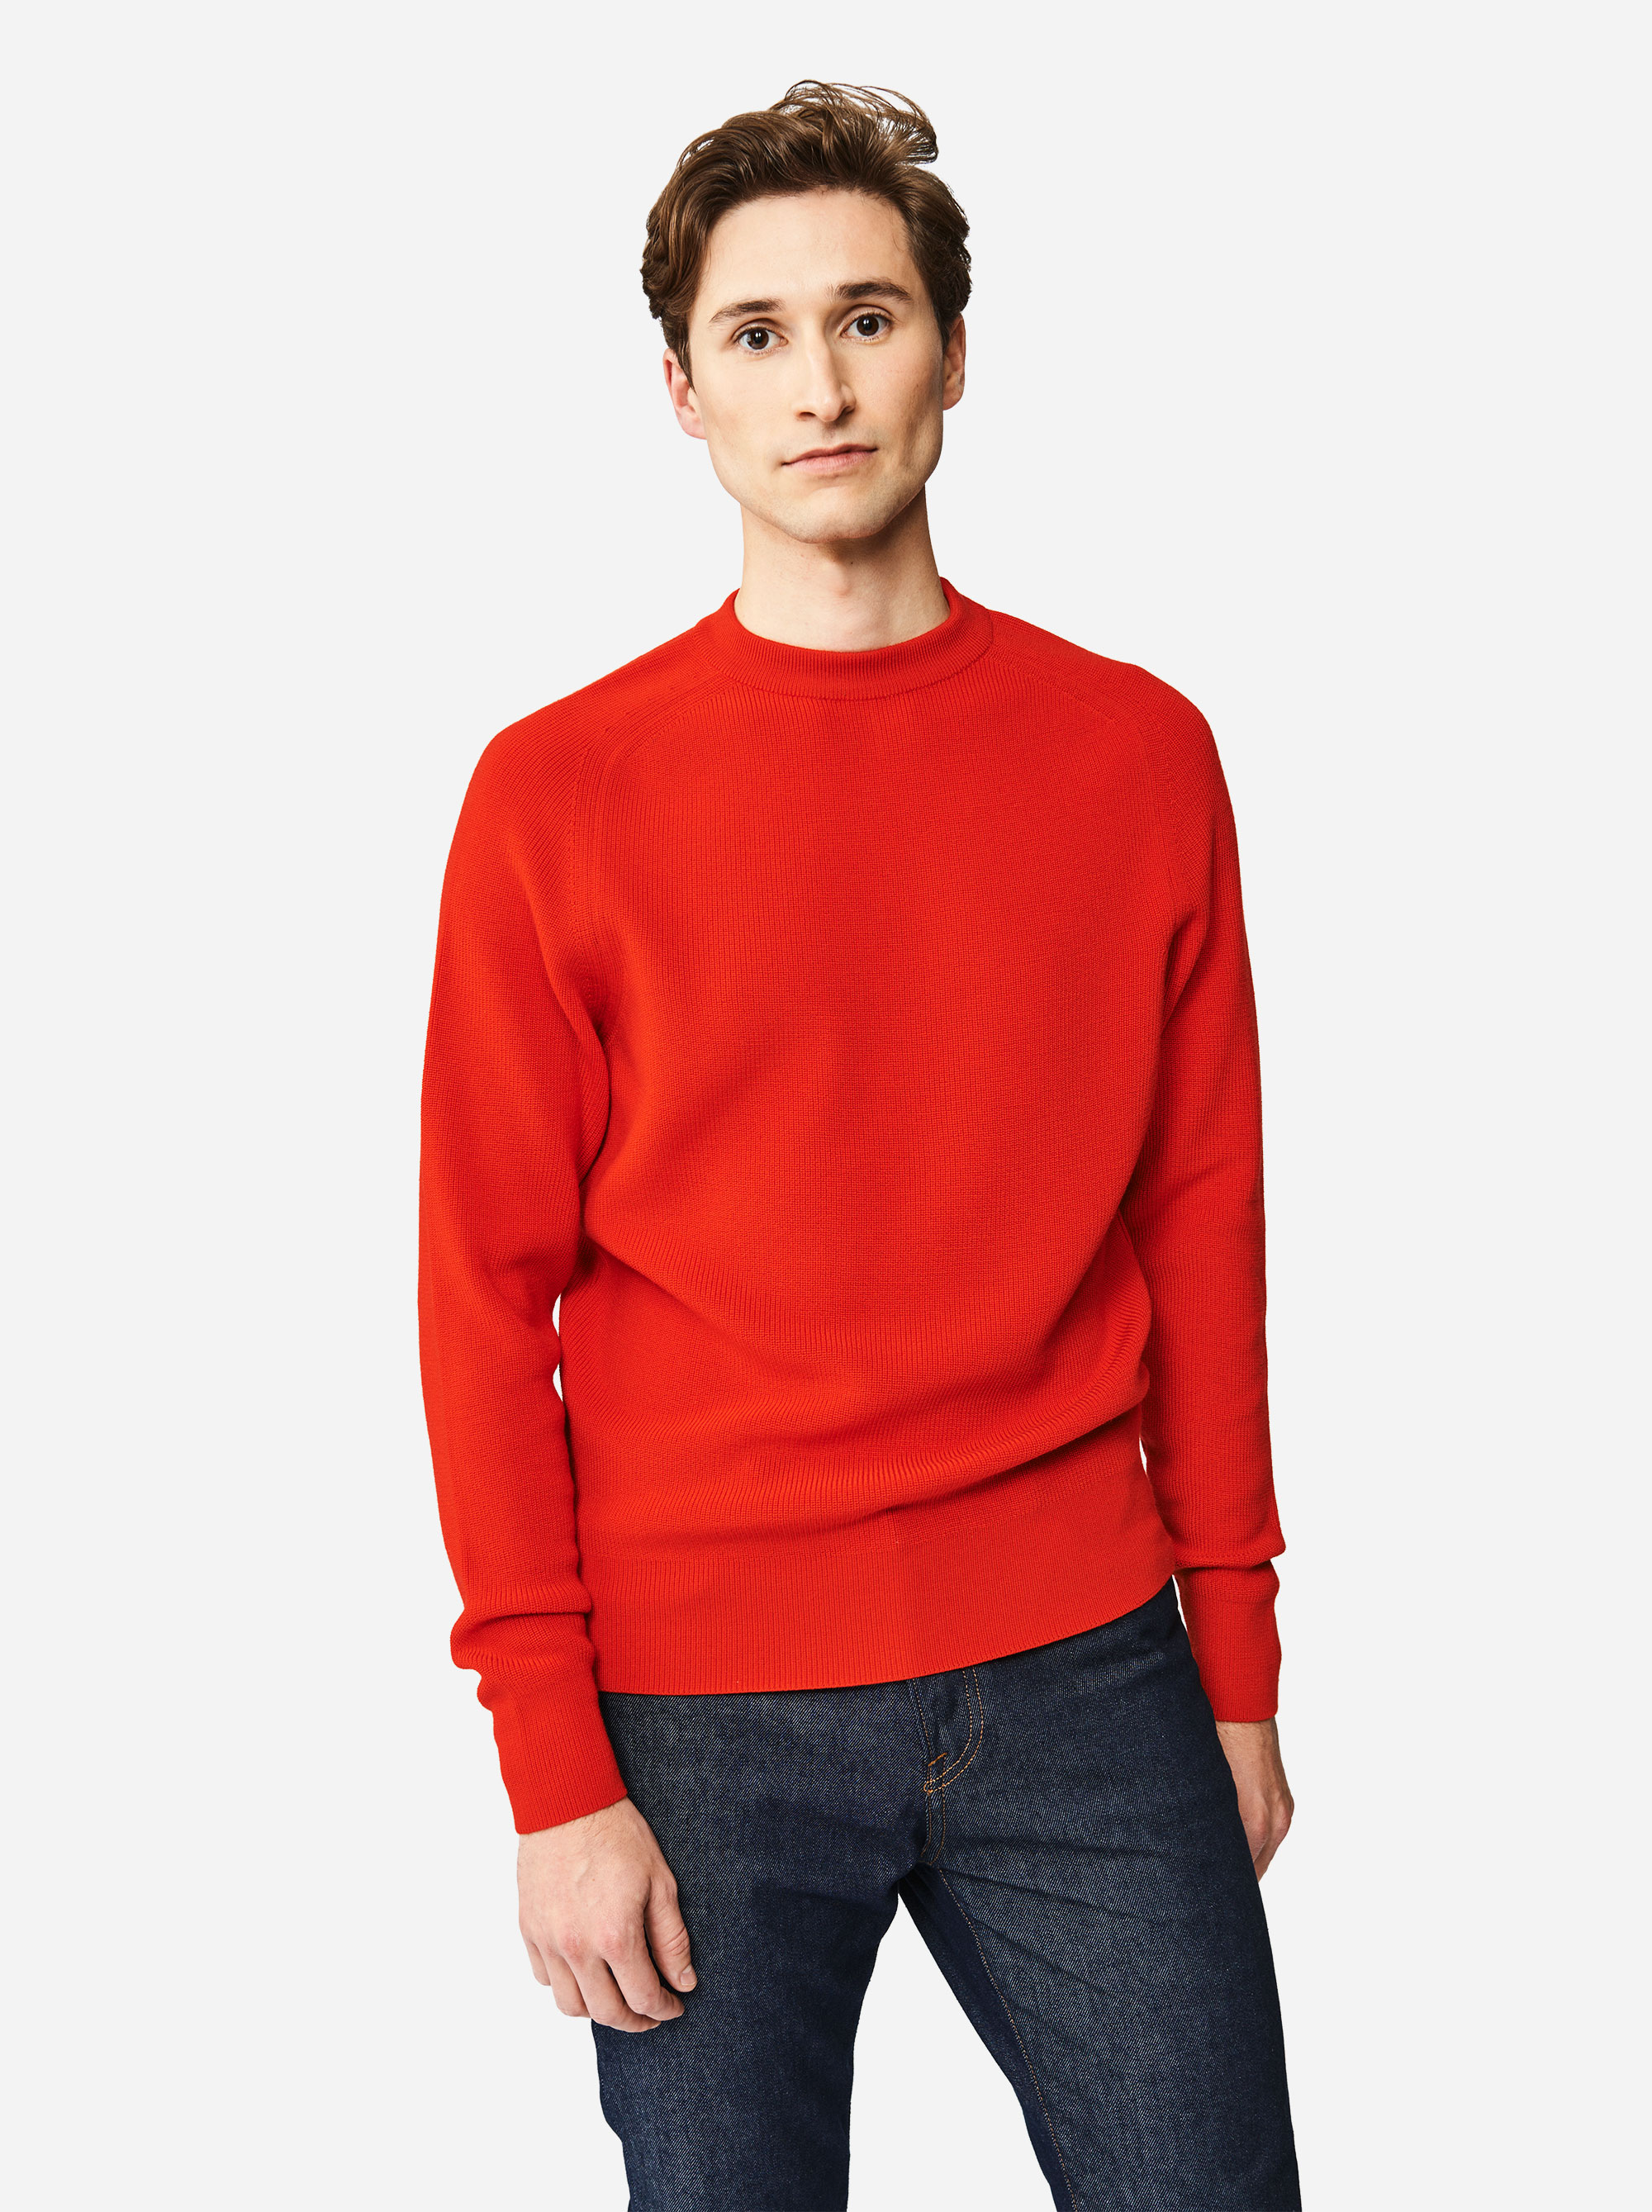 Teym - The Merino Sweater - Men - Red - 1